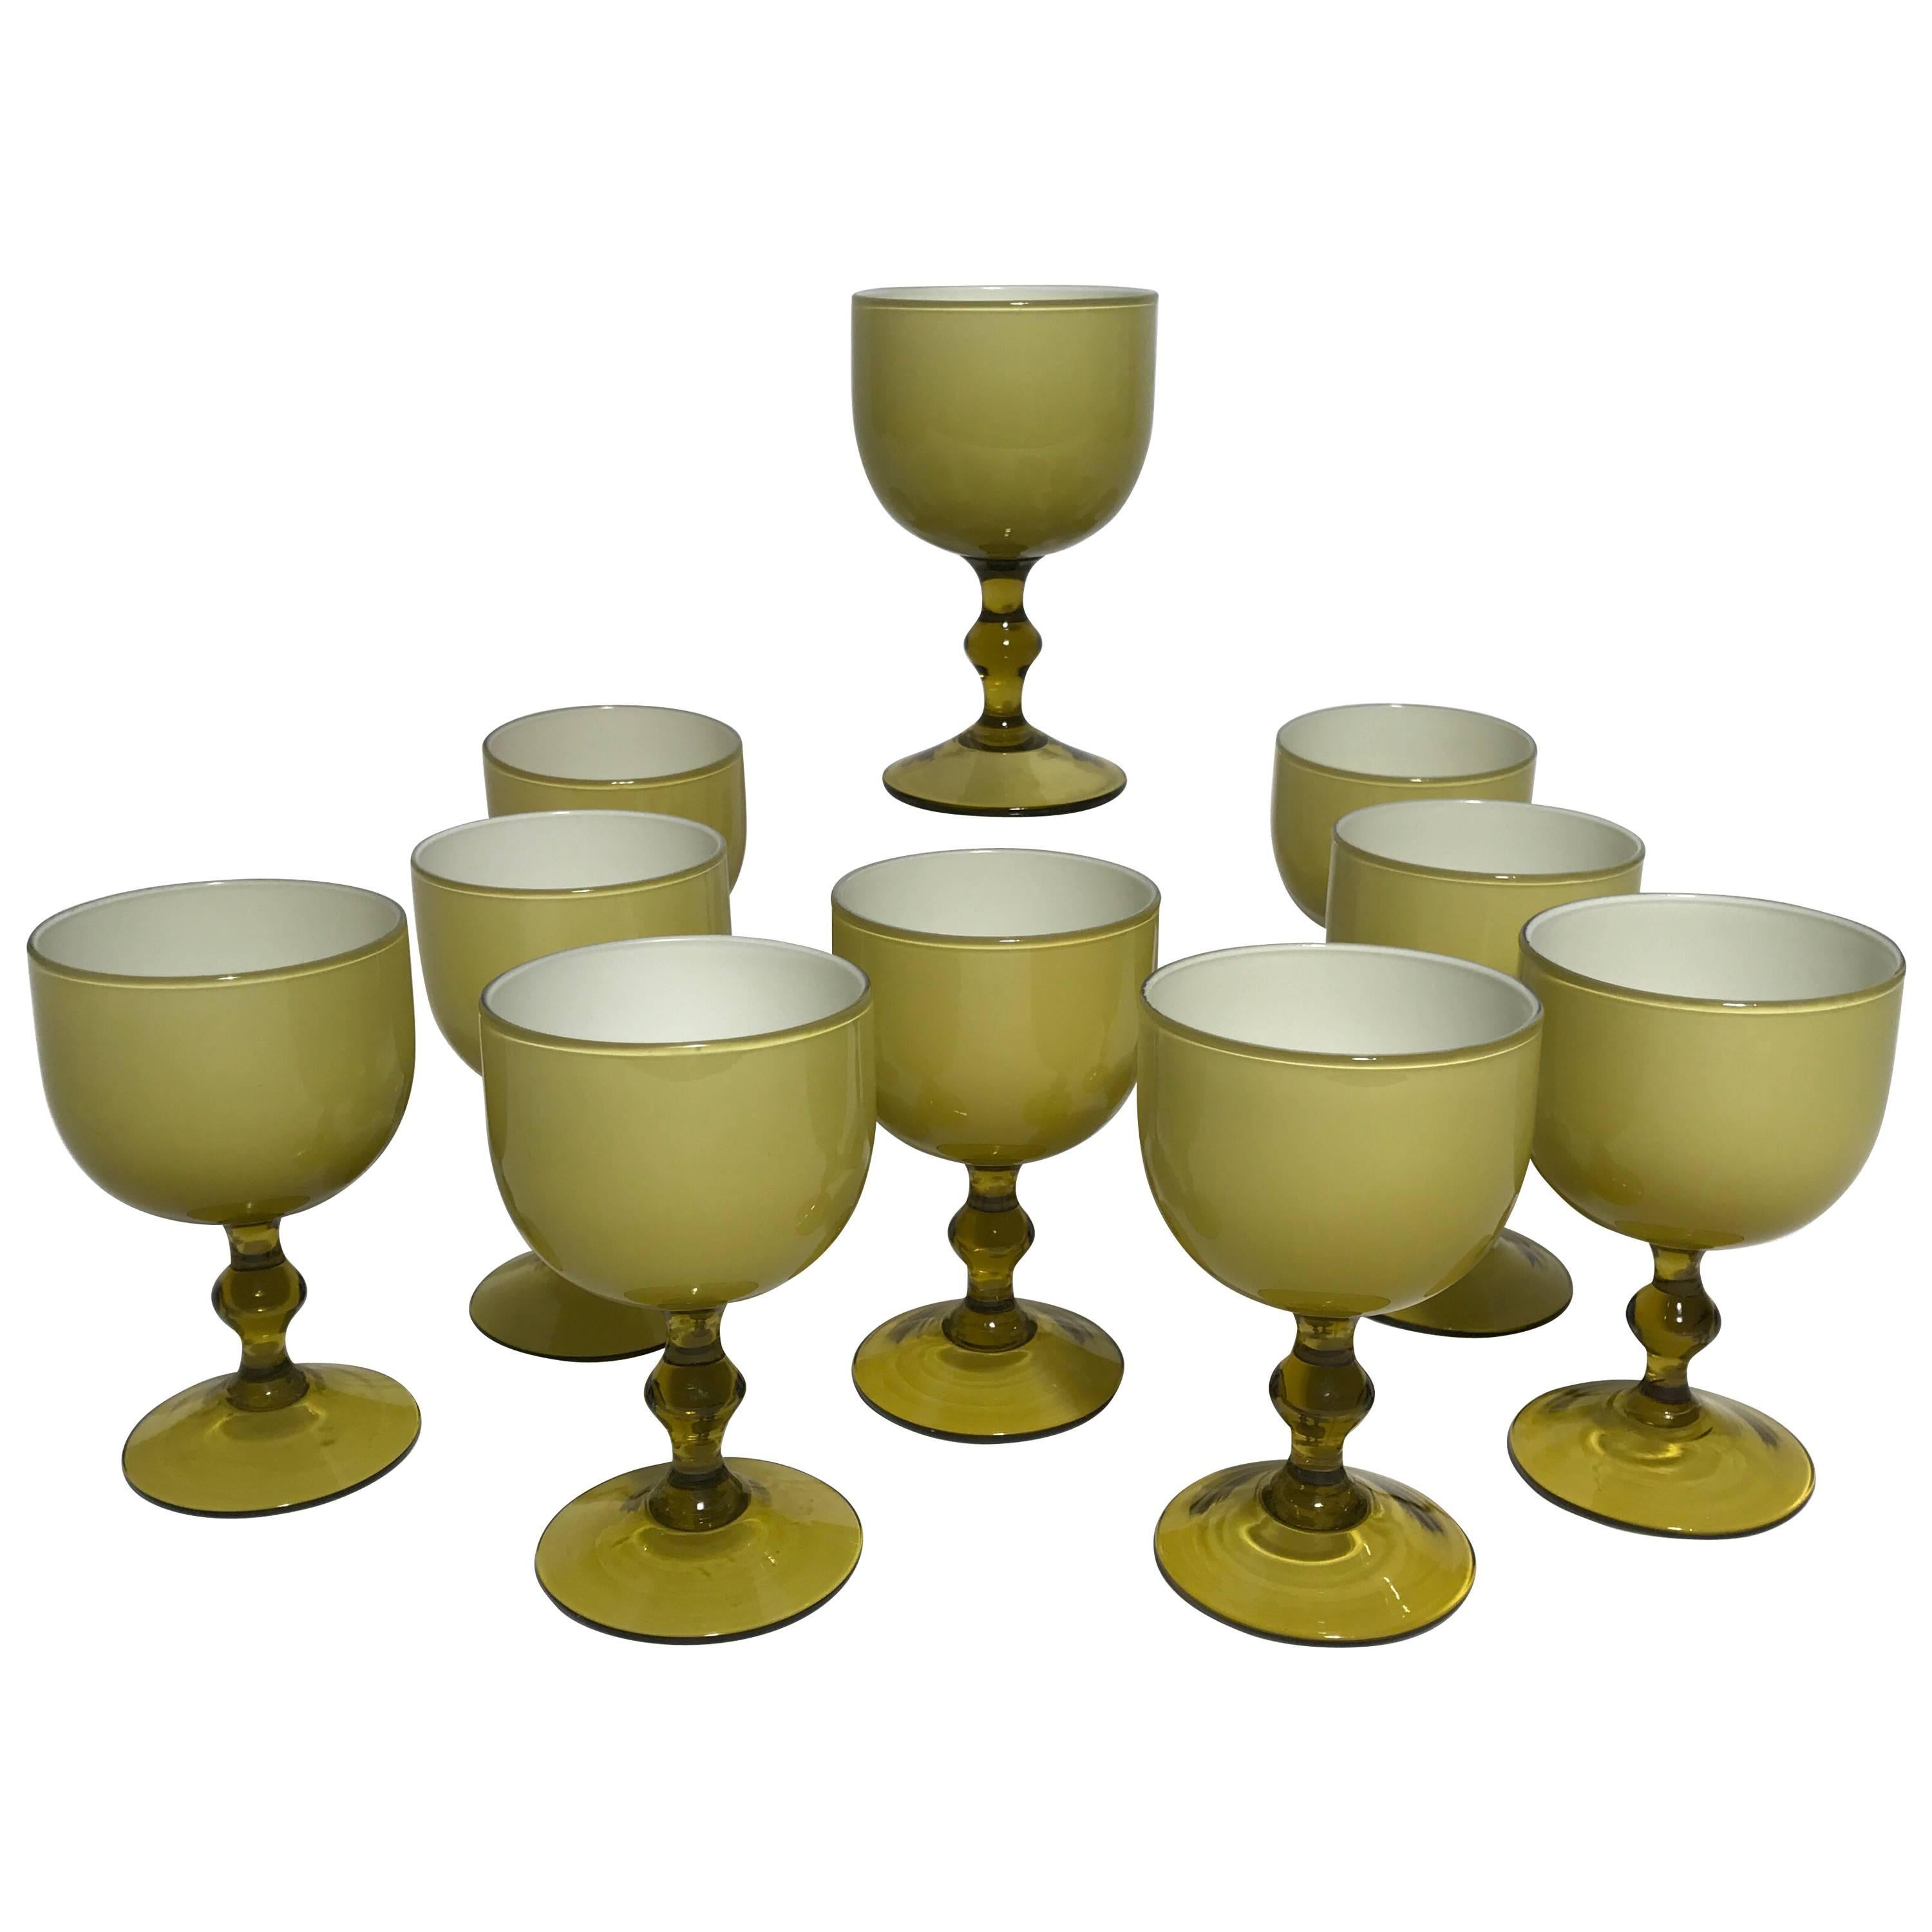 Ten Carlo Moretti Italian Cased Glass Wine Goblets, Amber and White